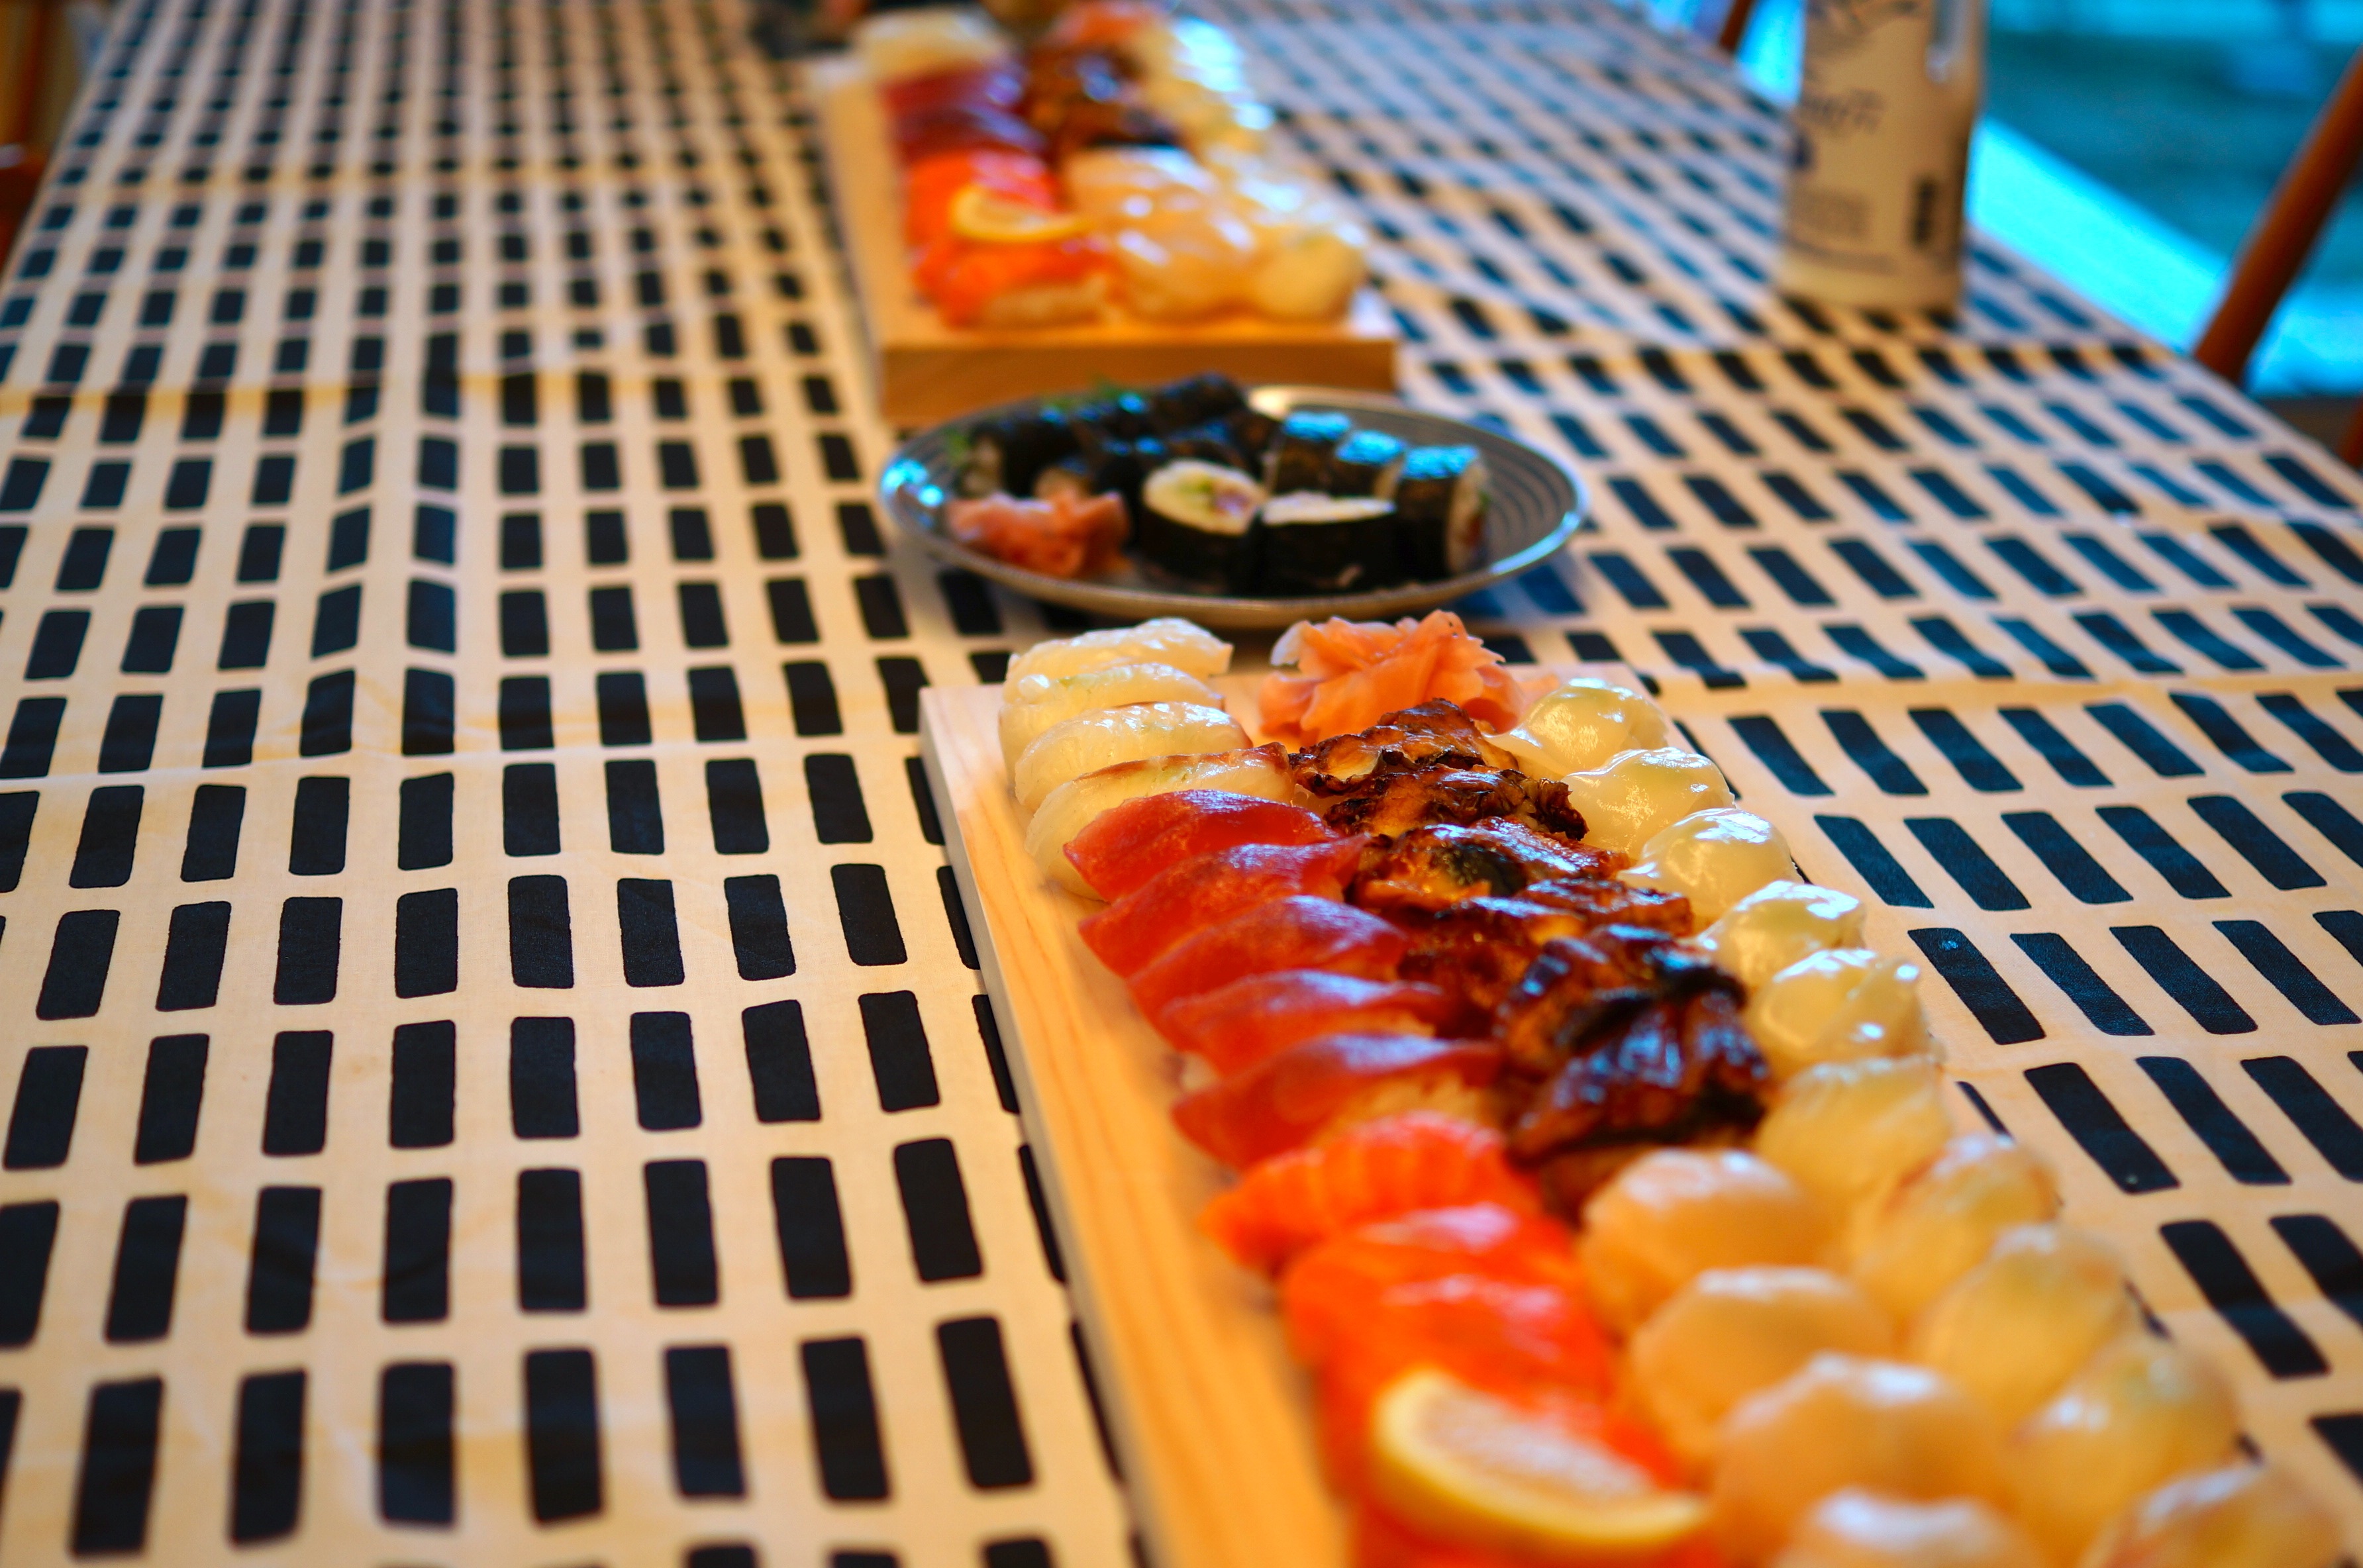 美吉野キッチンのひのきまな板はお寿司や和食との相性が抜群です